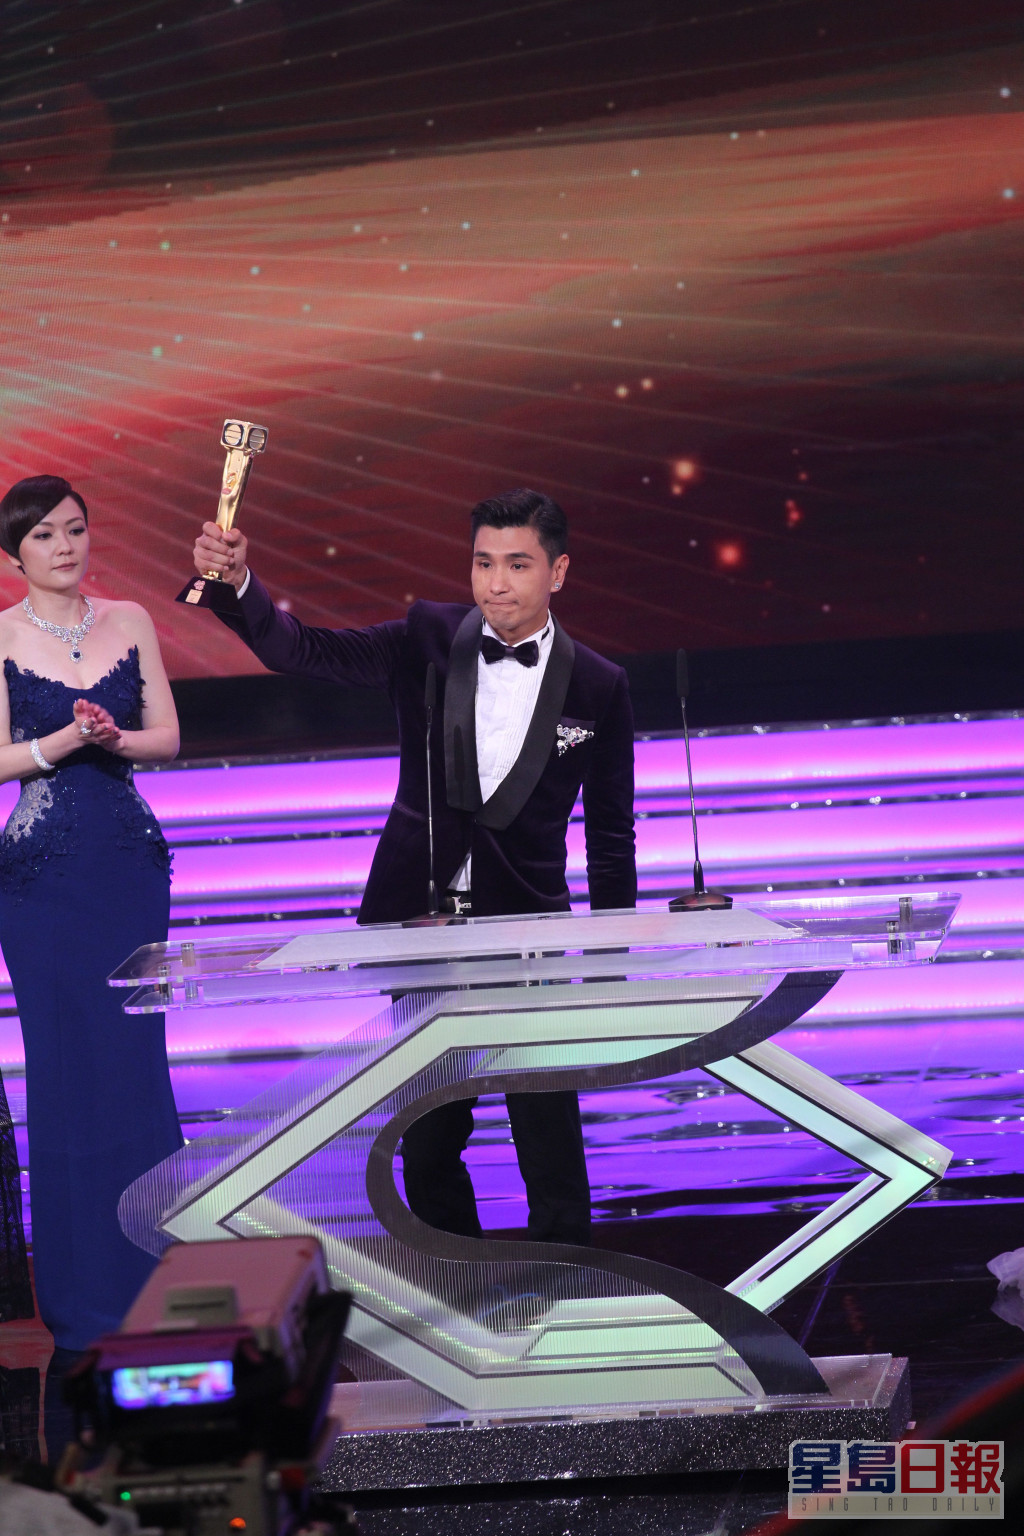 陈展鹏以《张保仔》夺得「最受欢迎电视男角色」。